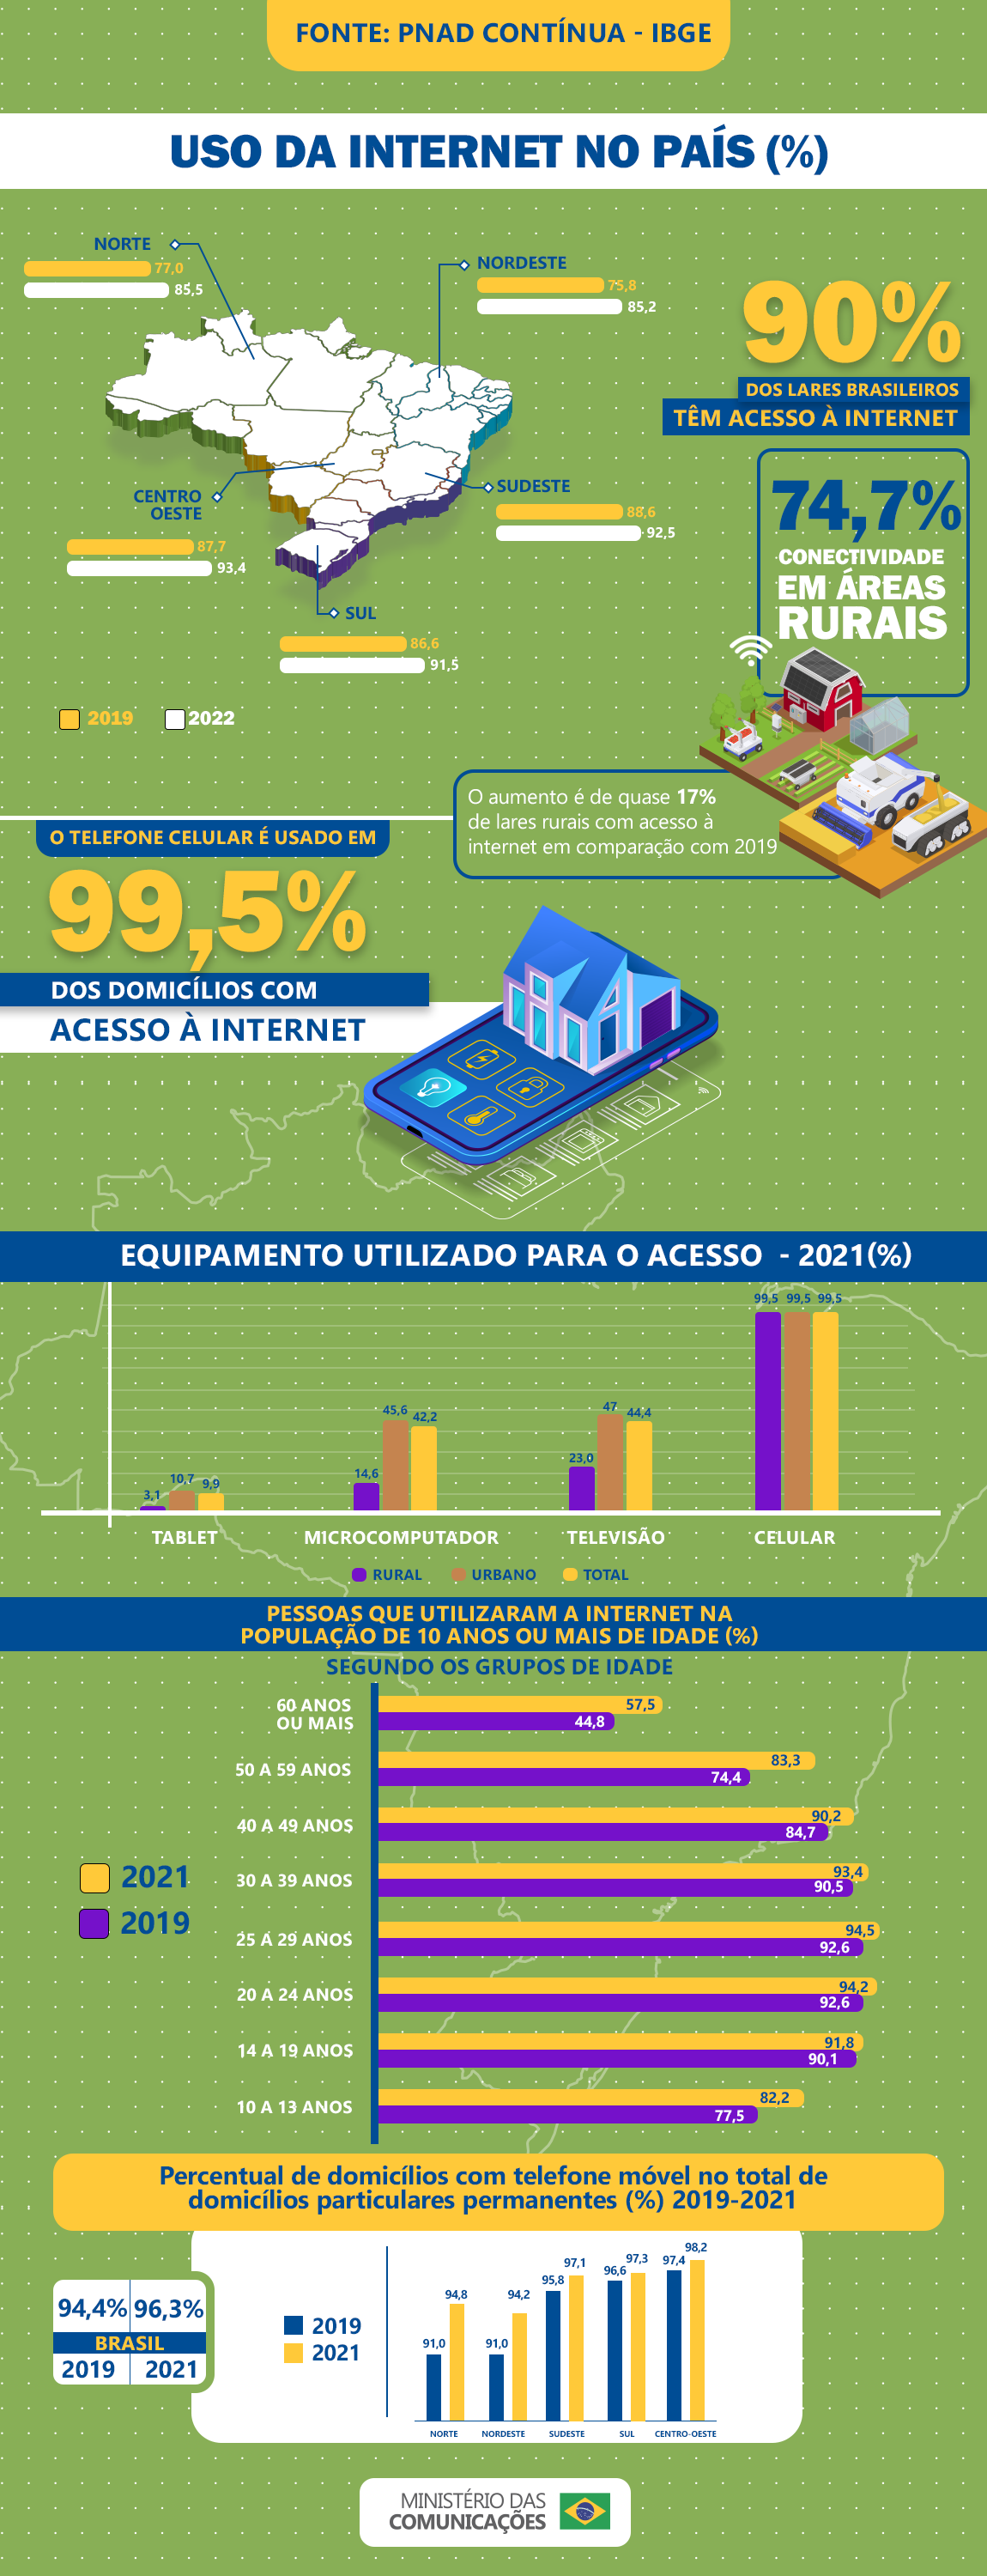 Celular segue como aparelho mais utilizado para acesso à internet no Brasil  — Ministério das Comunicações